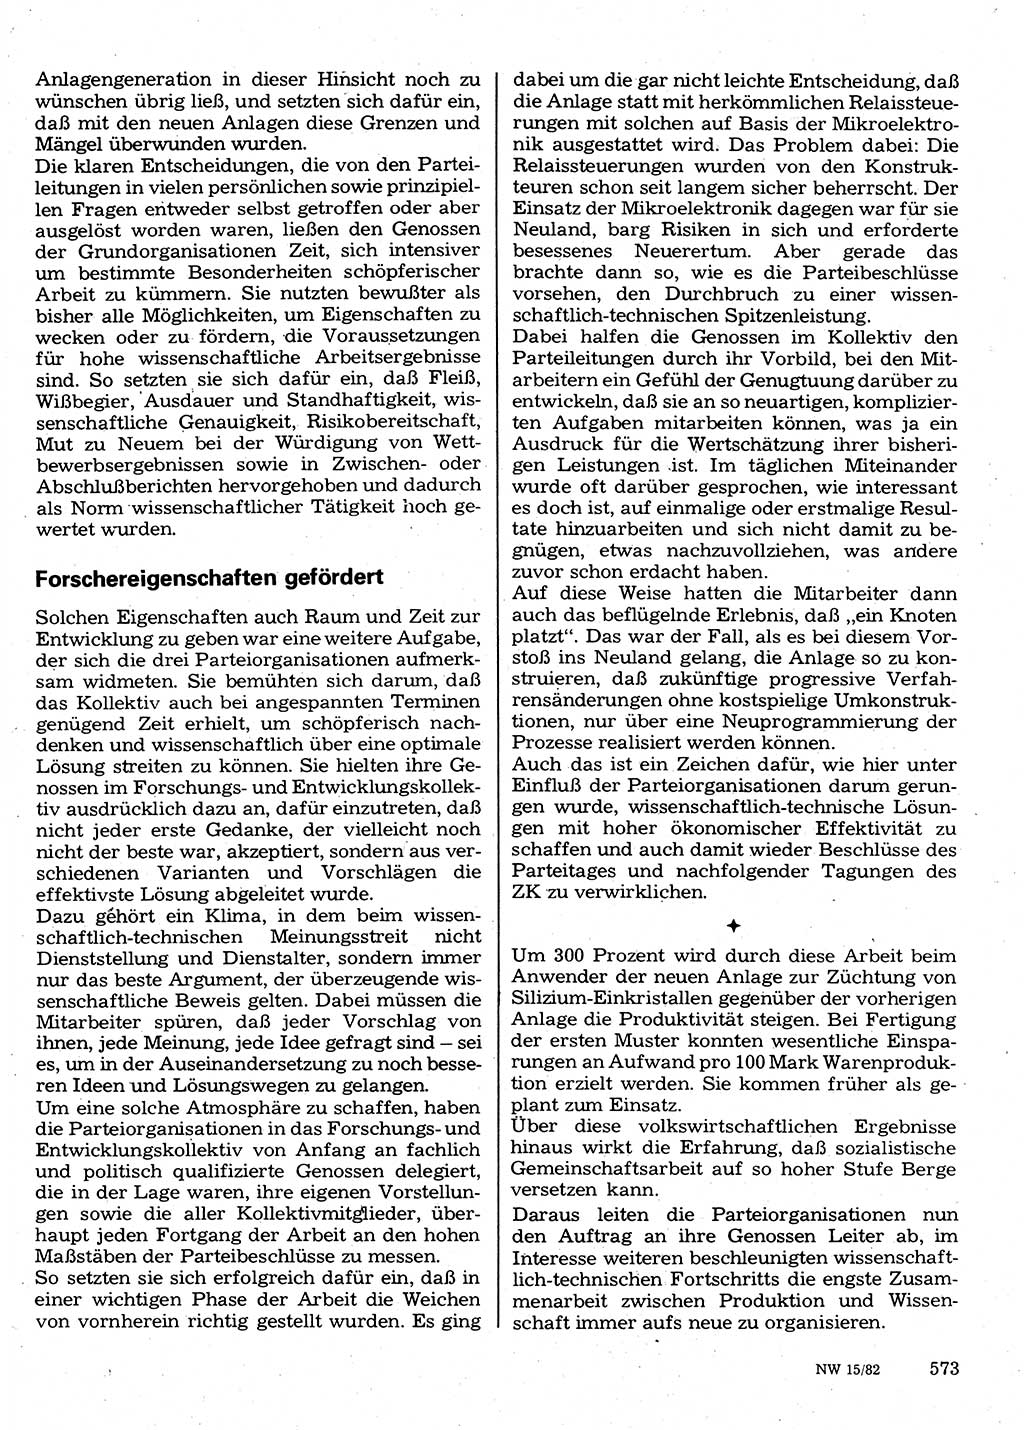 Neuer Weg (NW), Organ des Zentralkomitees (ZK) der SED (Sozialistische Einheitspartei Deutschlands) für Fragen des Parteilebens, 37. Jahrgang [Deutsche Demokratische Republik (DDR)] 1982, Seite 573 (NW ZK SED DDR 1982, S. 573)